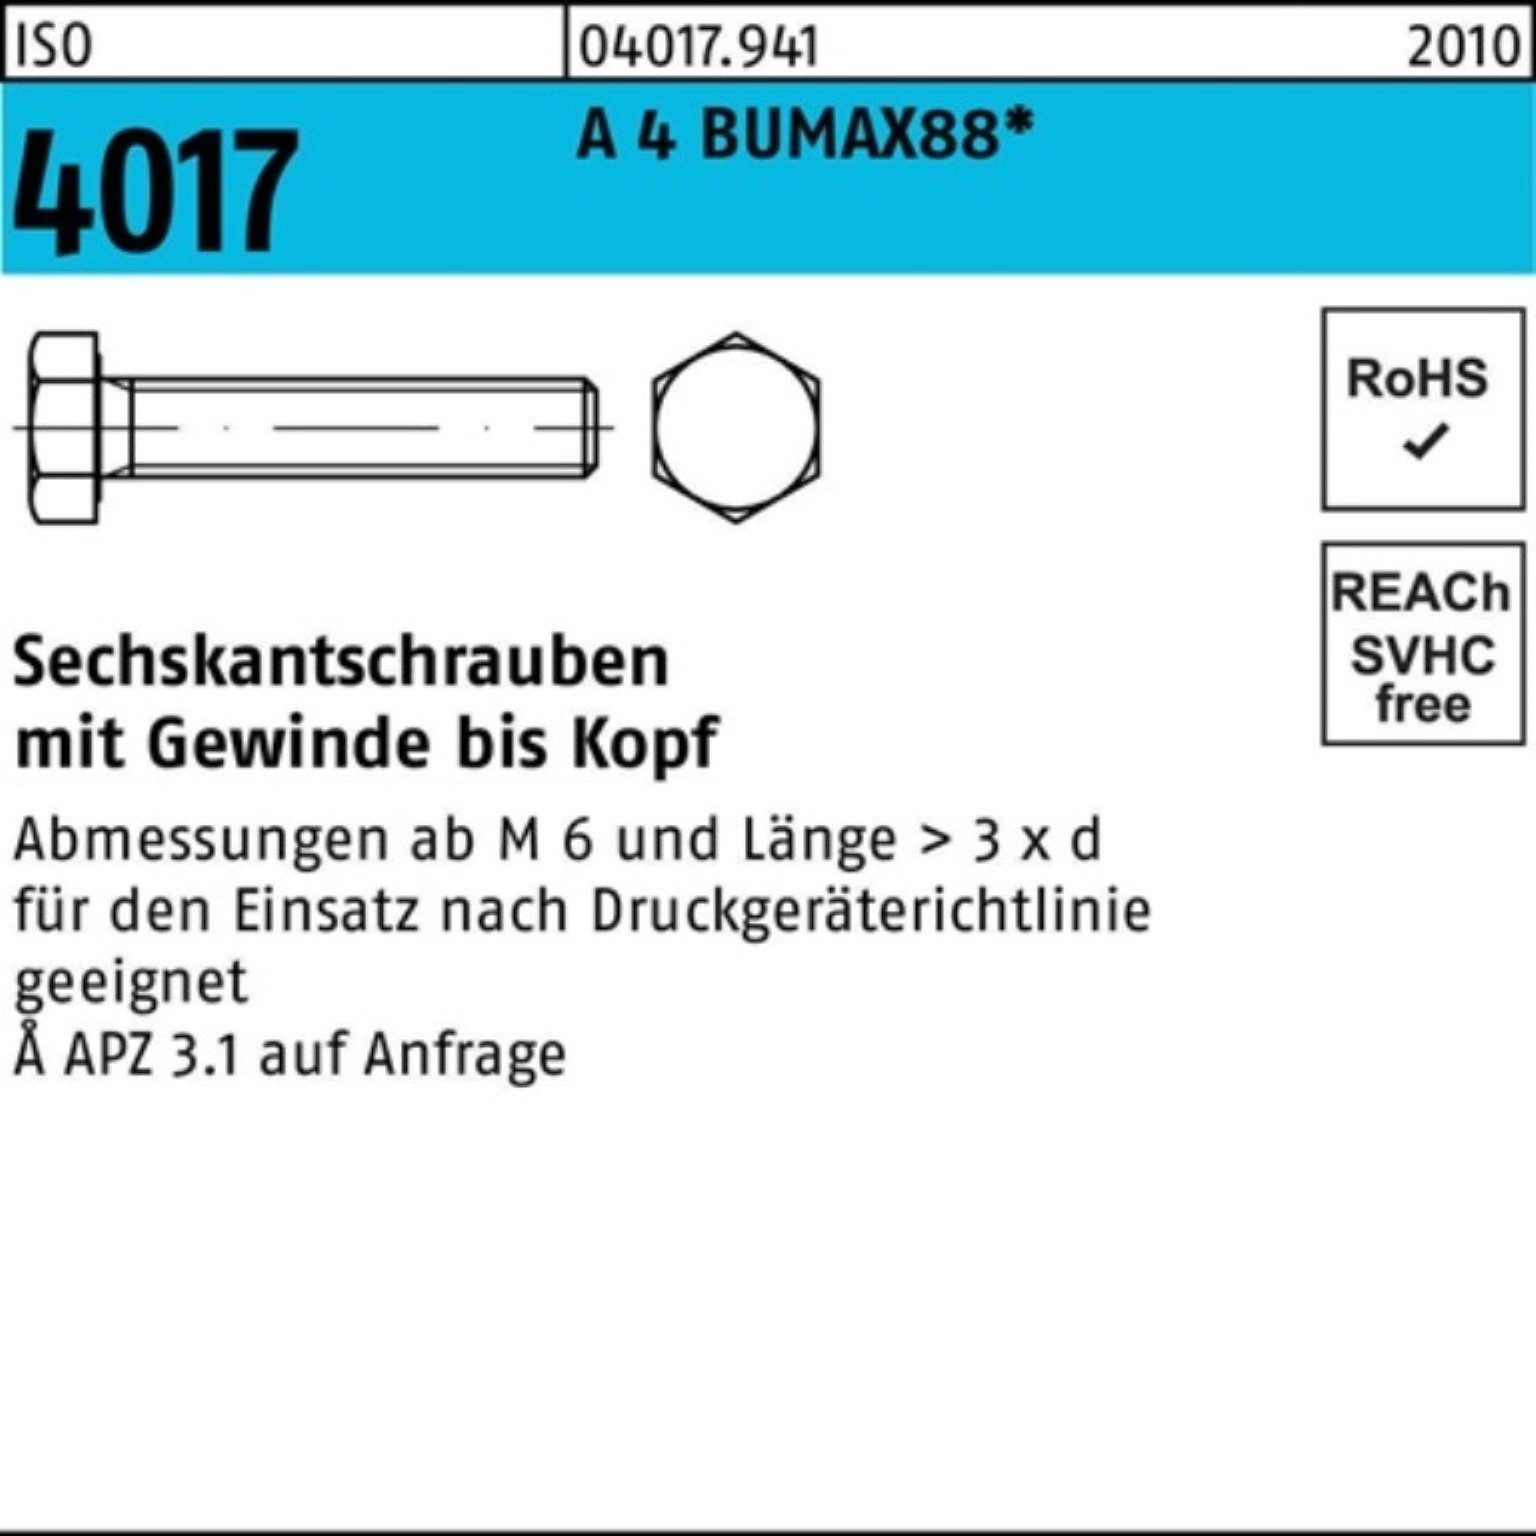 Bufab Sechskantschraube 100er Pack ISO M12x 4 BUMAX88 VG 25 Stück 4017 45 A Sechskantschraube